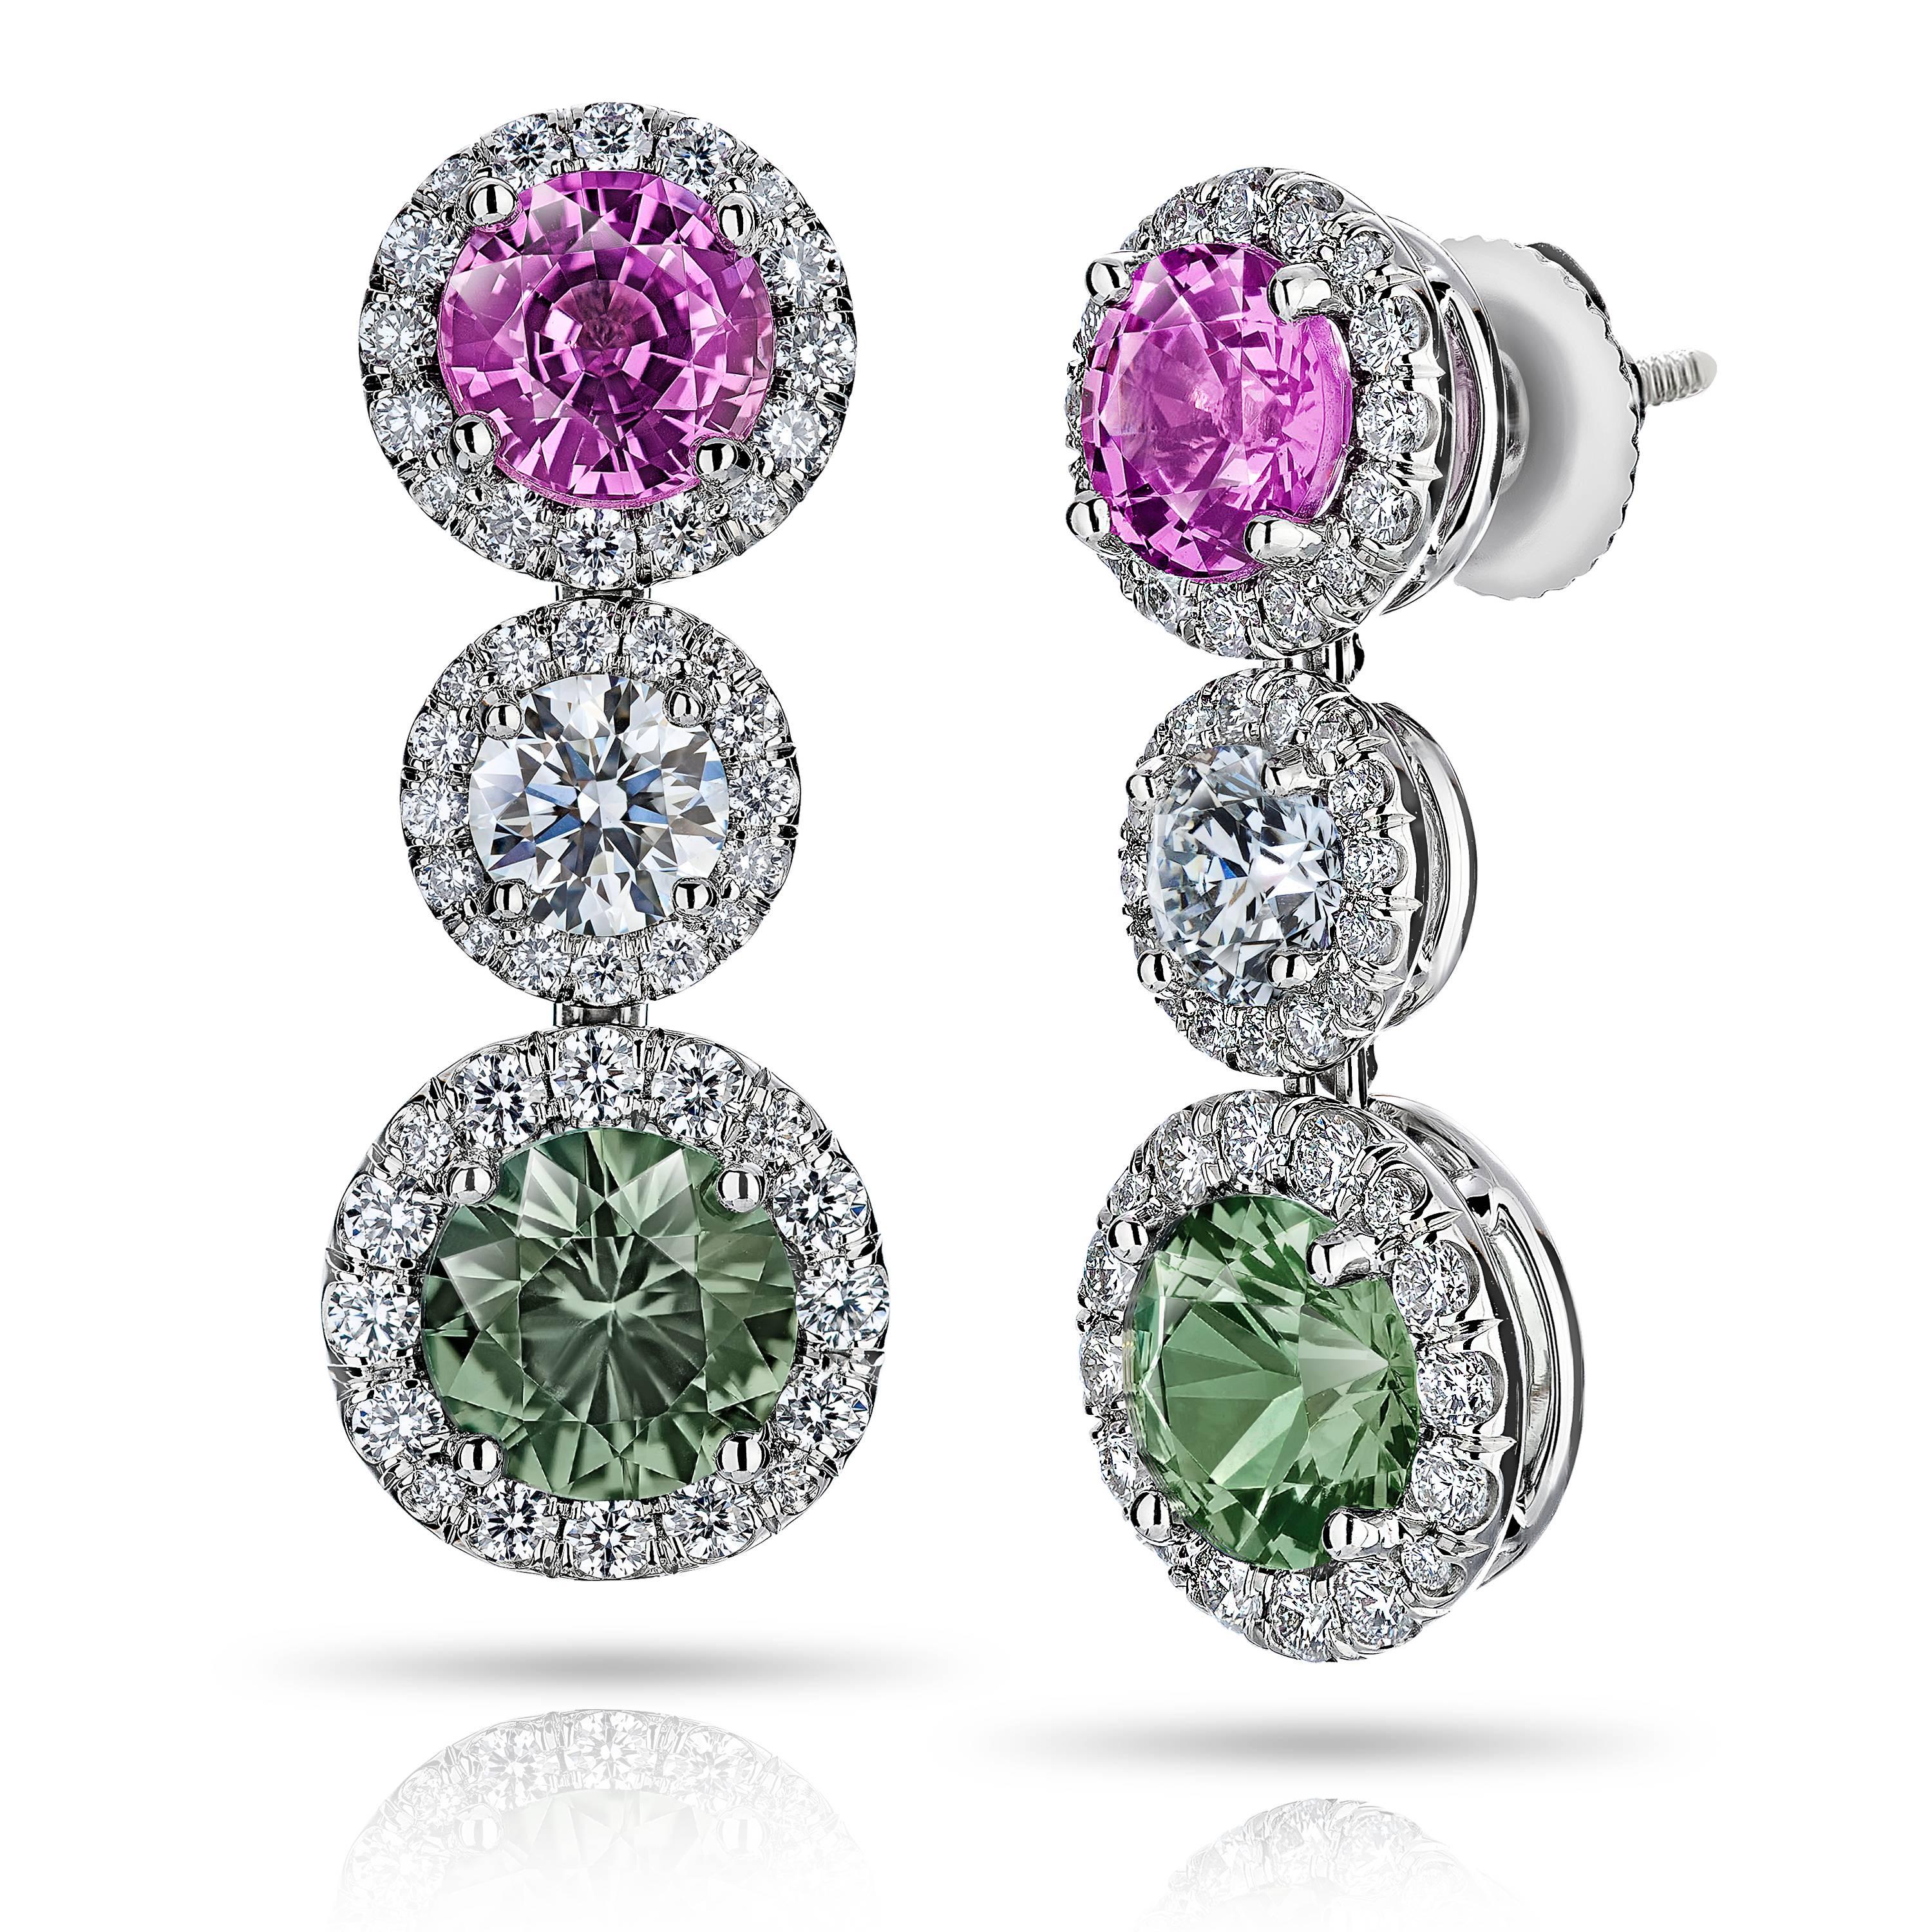 Grüne und rosafarbene Saphir- und Diamant-Tropfenohrringe, mit einem Gesamtgewicht von 2,35 Karat bei den grünen Saphiren und 1,98 Karat bei den rosafarbenen Saphiren sowie 2 runden Diamanten von 0,67 Karat (GIA E /VS)  und 96 Diamanten im